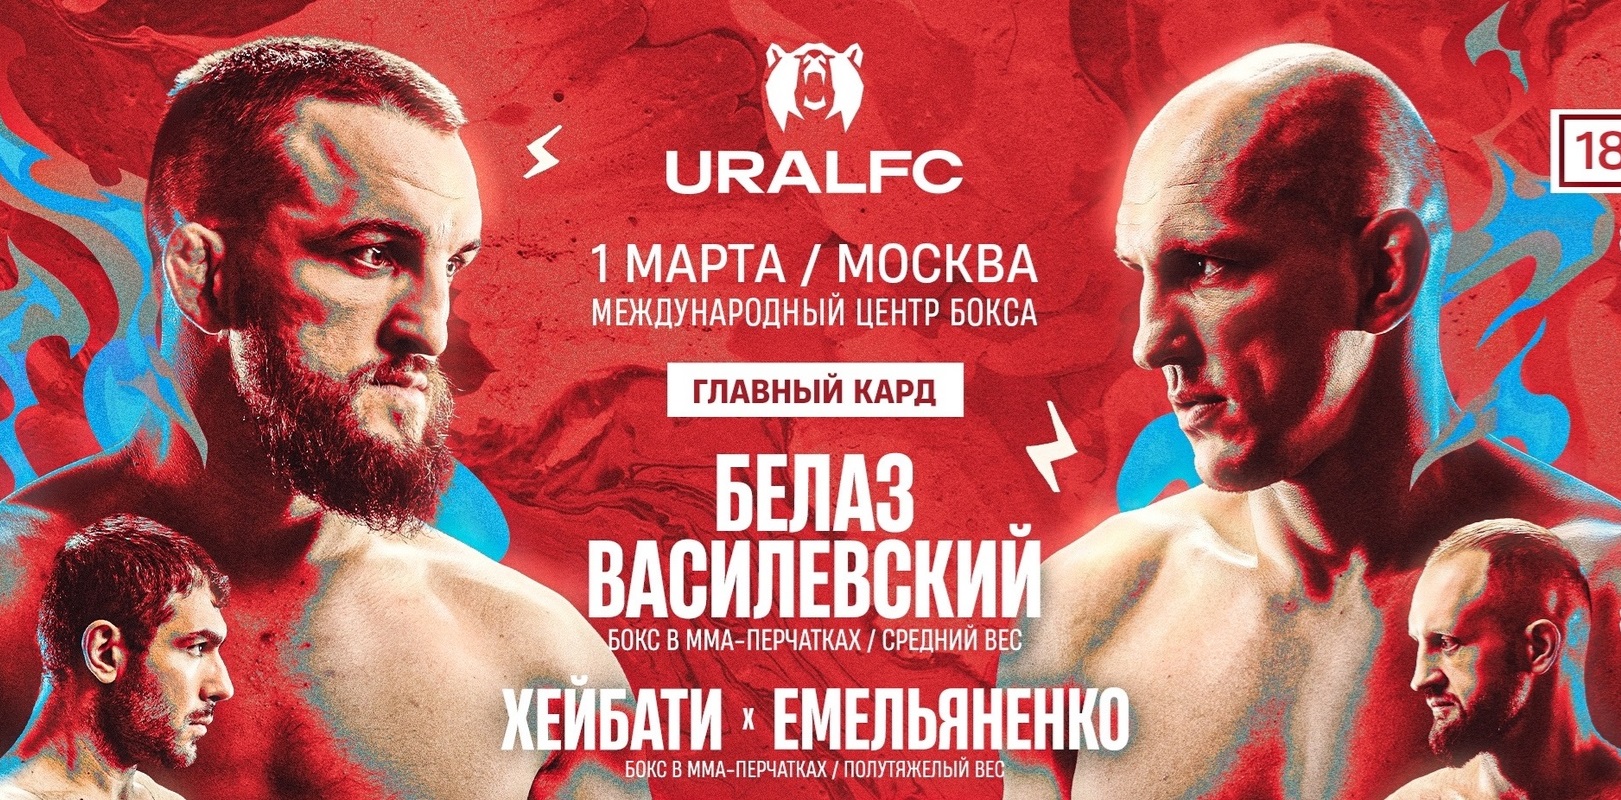 Василевский и Ковалев устроили рубку, Емельяненко победил Хейбати: что было интересного на Ural FC 6